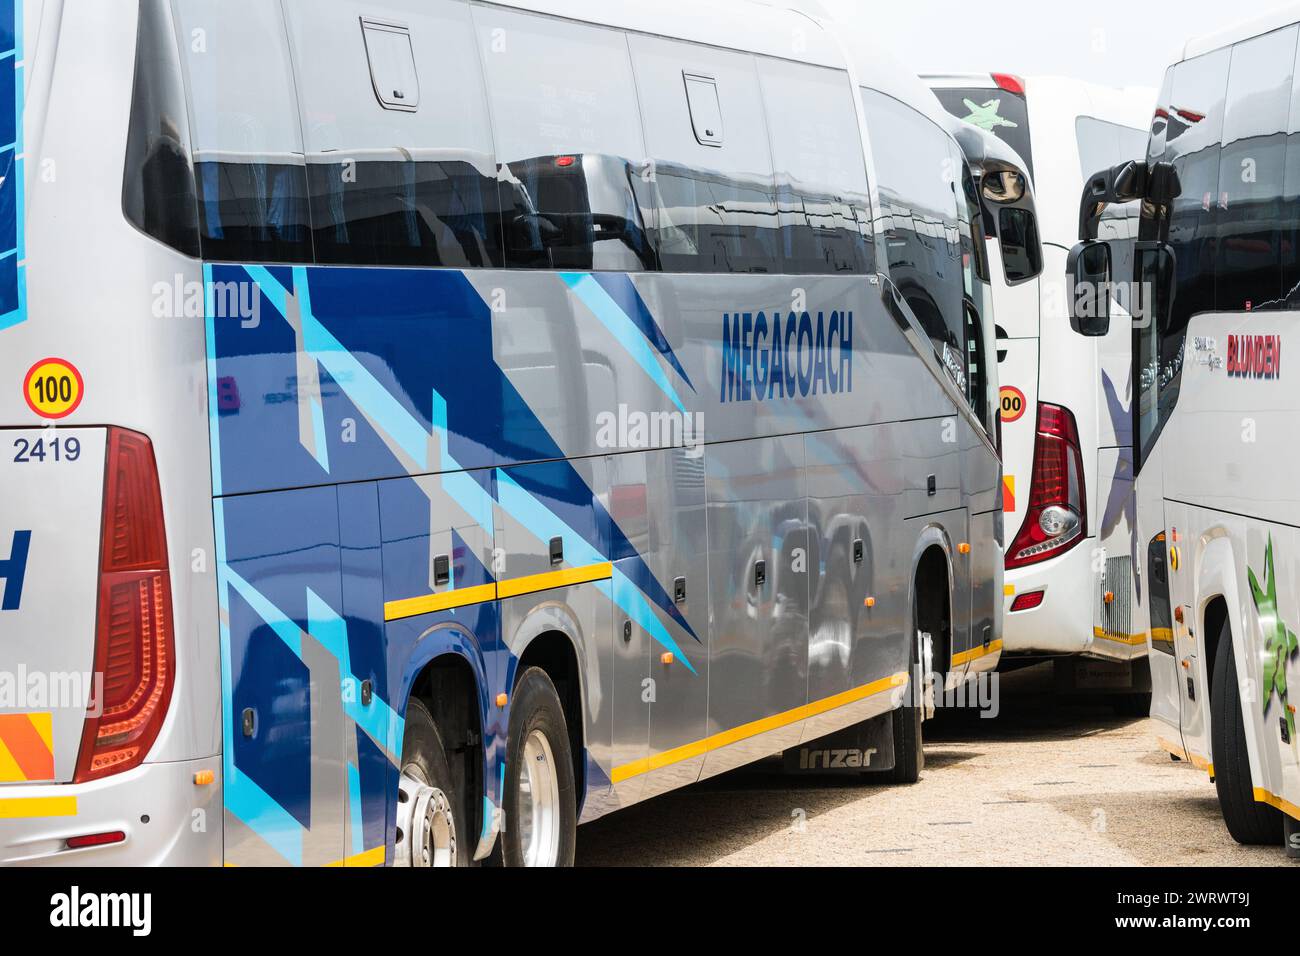 Tourenbusse, Reisebusse, Busse, die an einem Touristenziel in Cape Point, Western Cape, Südafrika Konzeptreisen und Tourismustransport parken Stockfoto